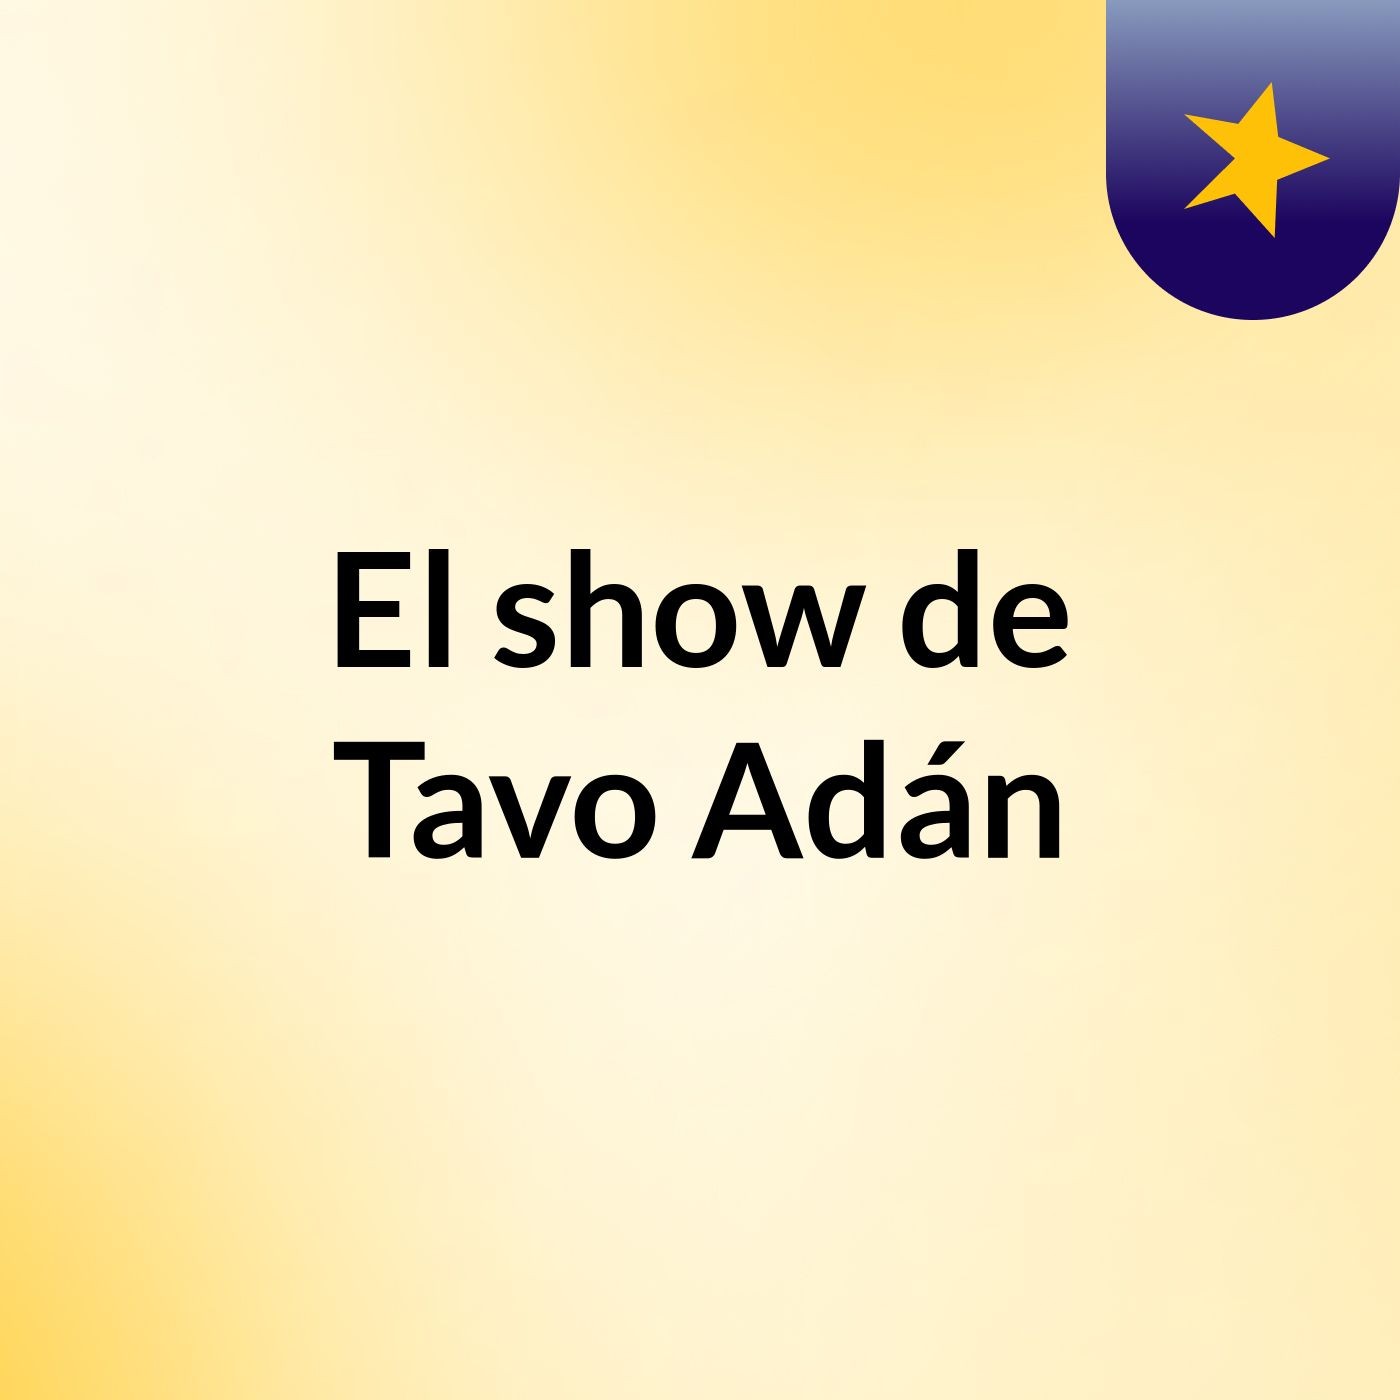 El show de Tavo Adán